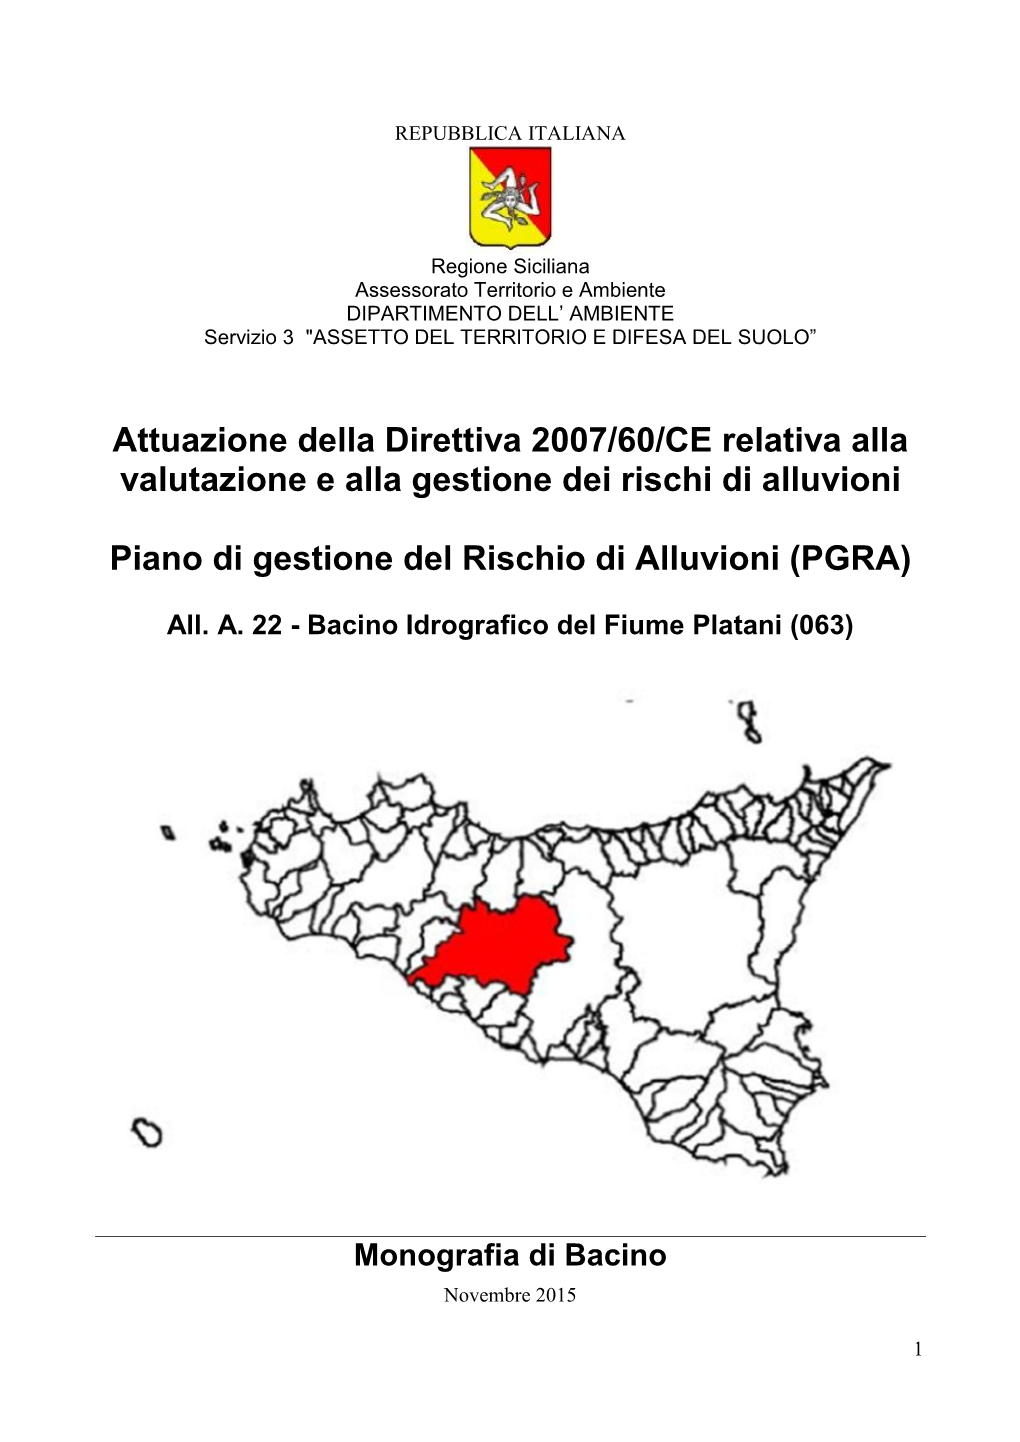 Bacino Idrografico Del Fiume Platani (063)